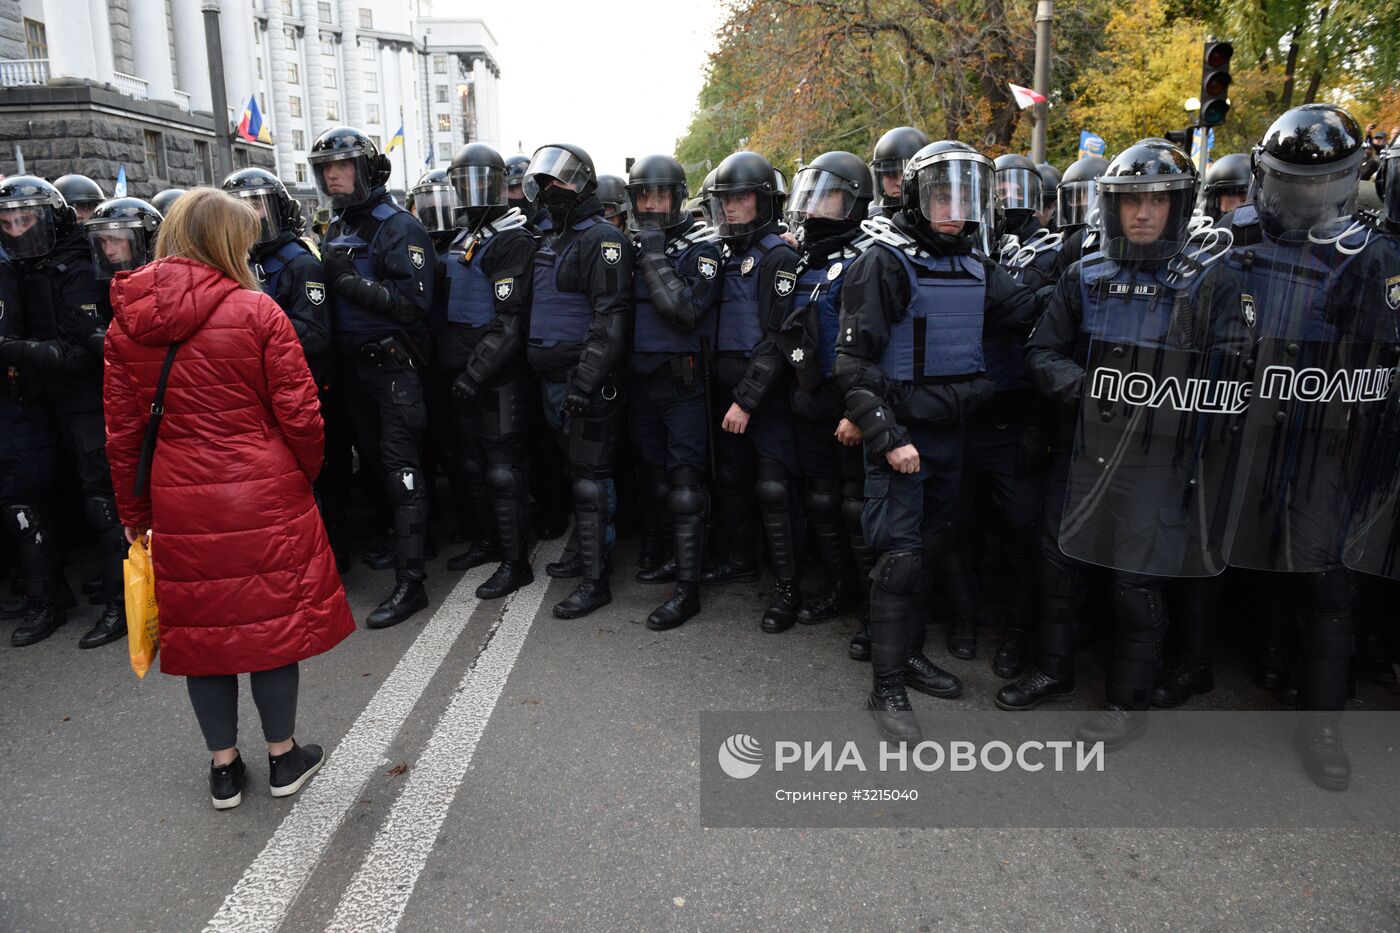 Акция протеста у здания Верховной рады Украины в Киеве